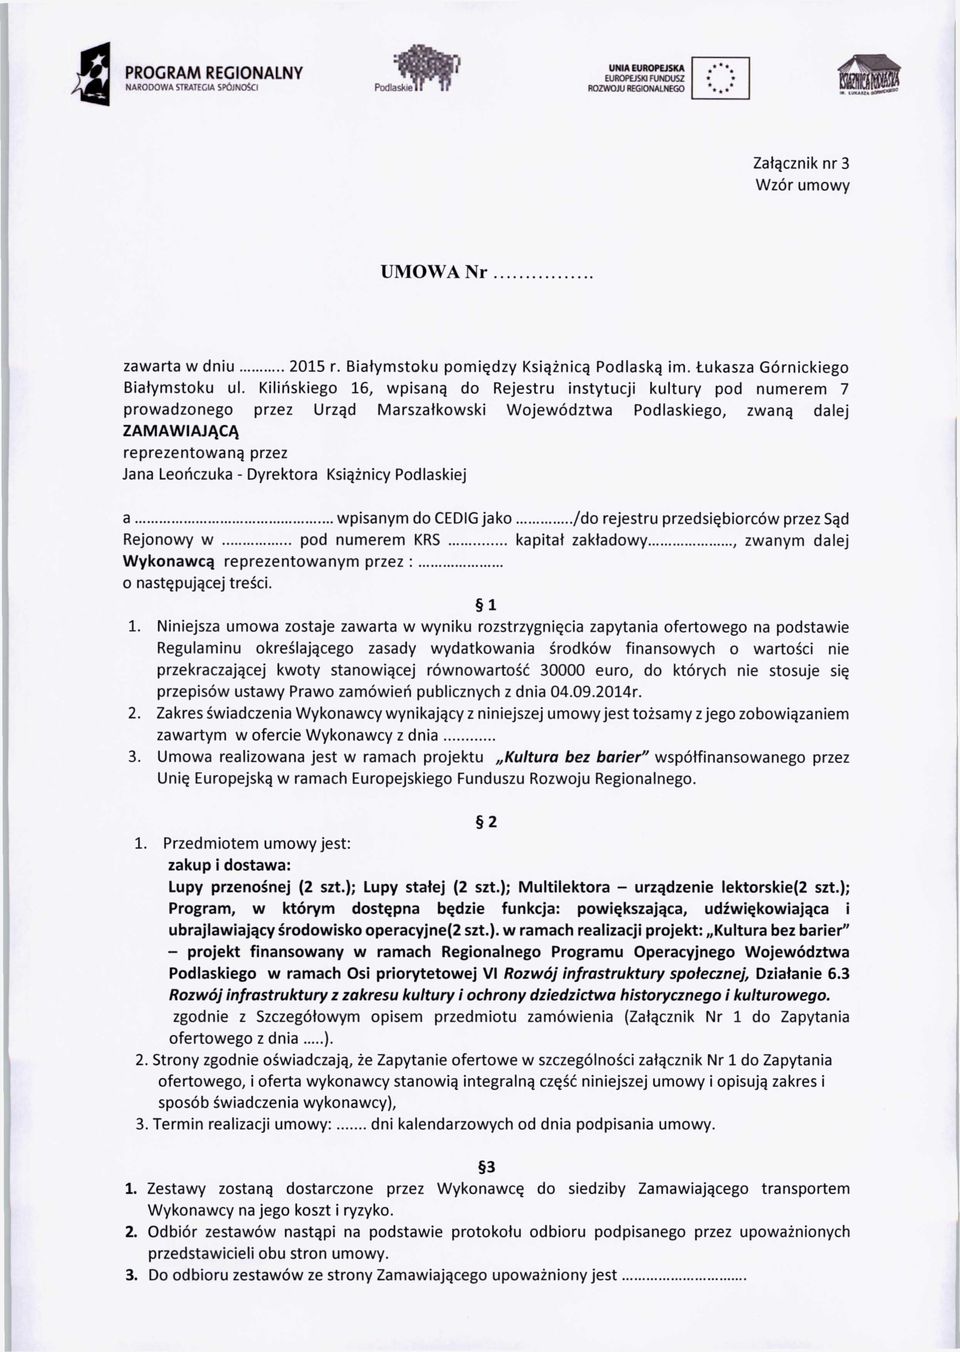 Dyrektora Książnicy Podlaskiej a... wpisanym do CEDIG jako... /do rejestru przedsiębiorców przez Sąd Rejonowy w... pod numerem KRS... kapitał zakładowy.